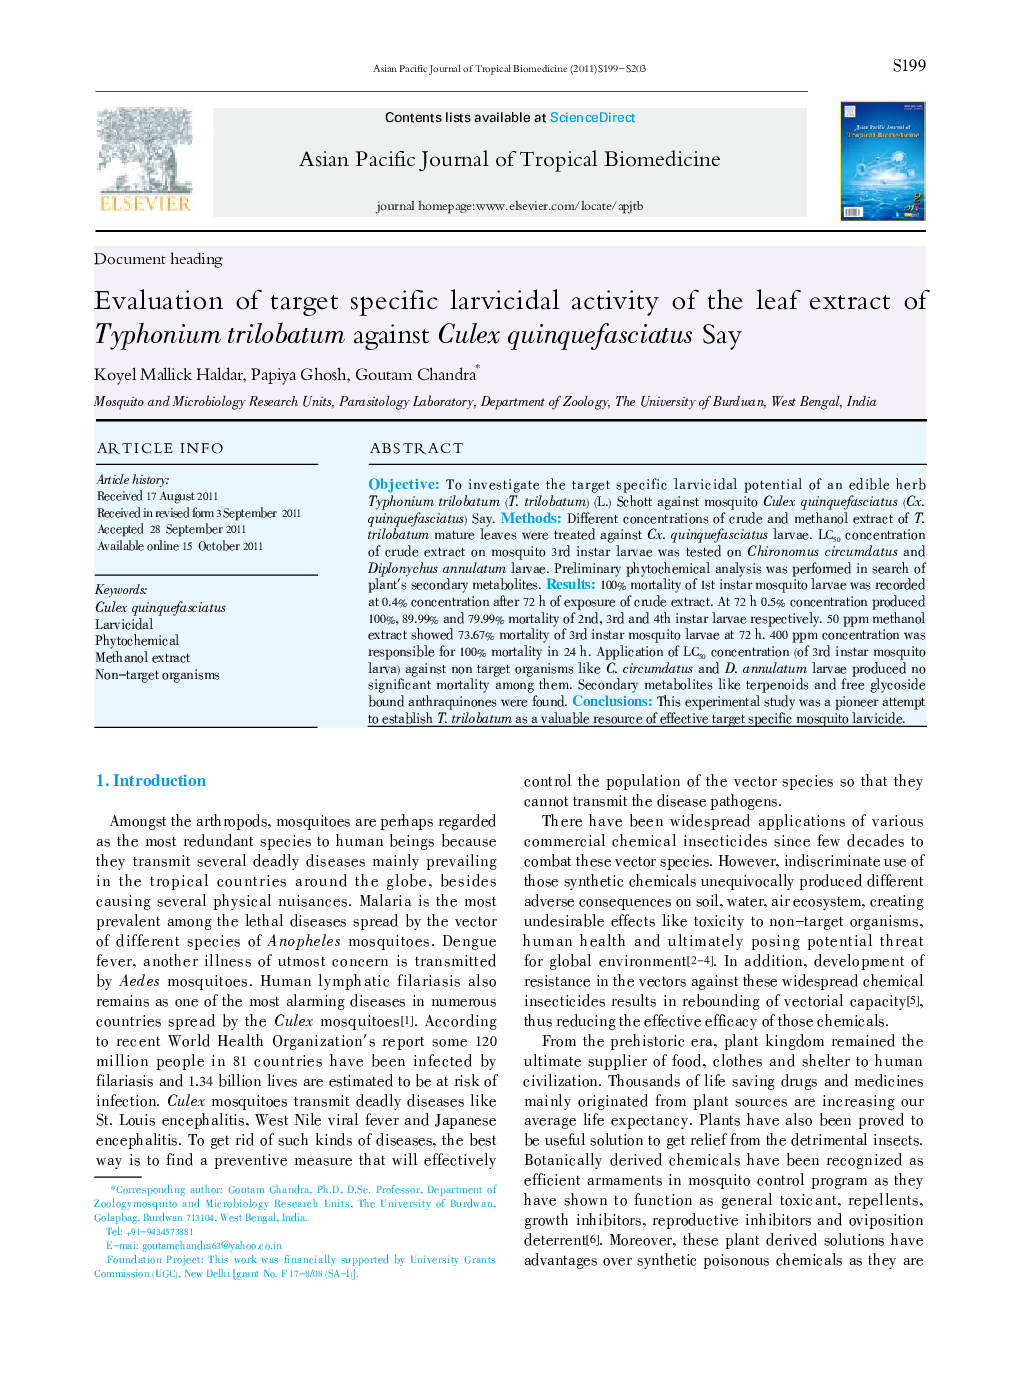 Evaluation of target specific larvicidal activity of the leaf extract of Typhonium trilobatum against Culex quinquefasciatus Say